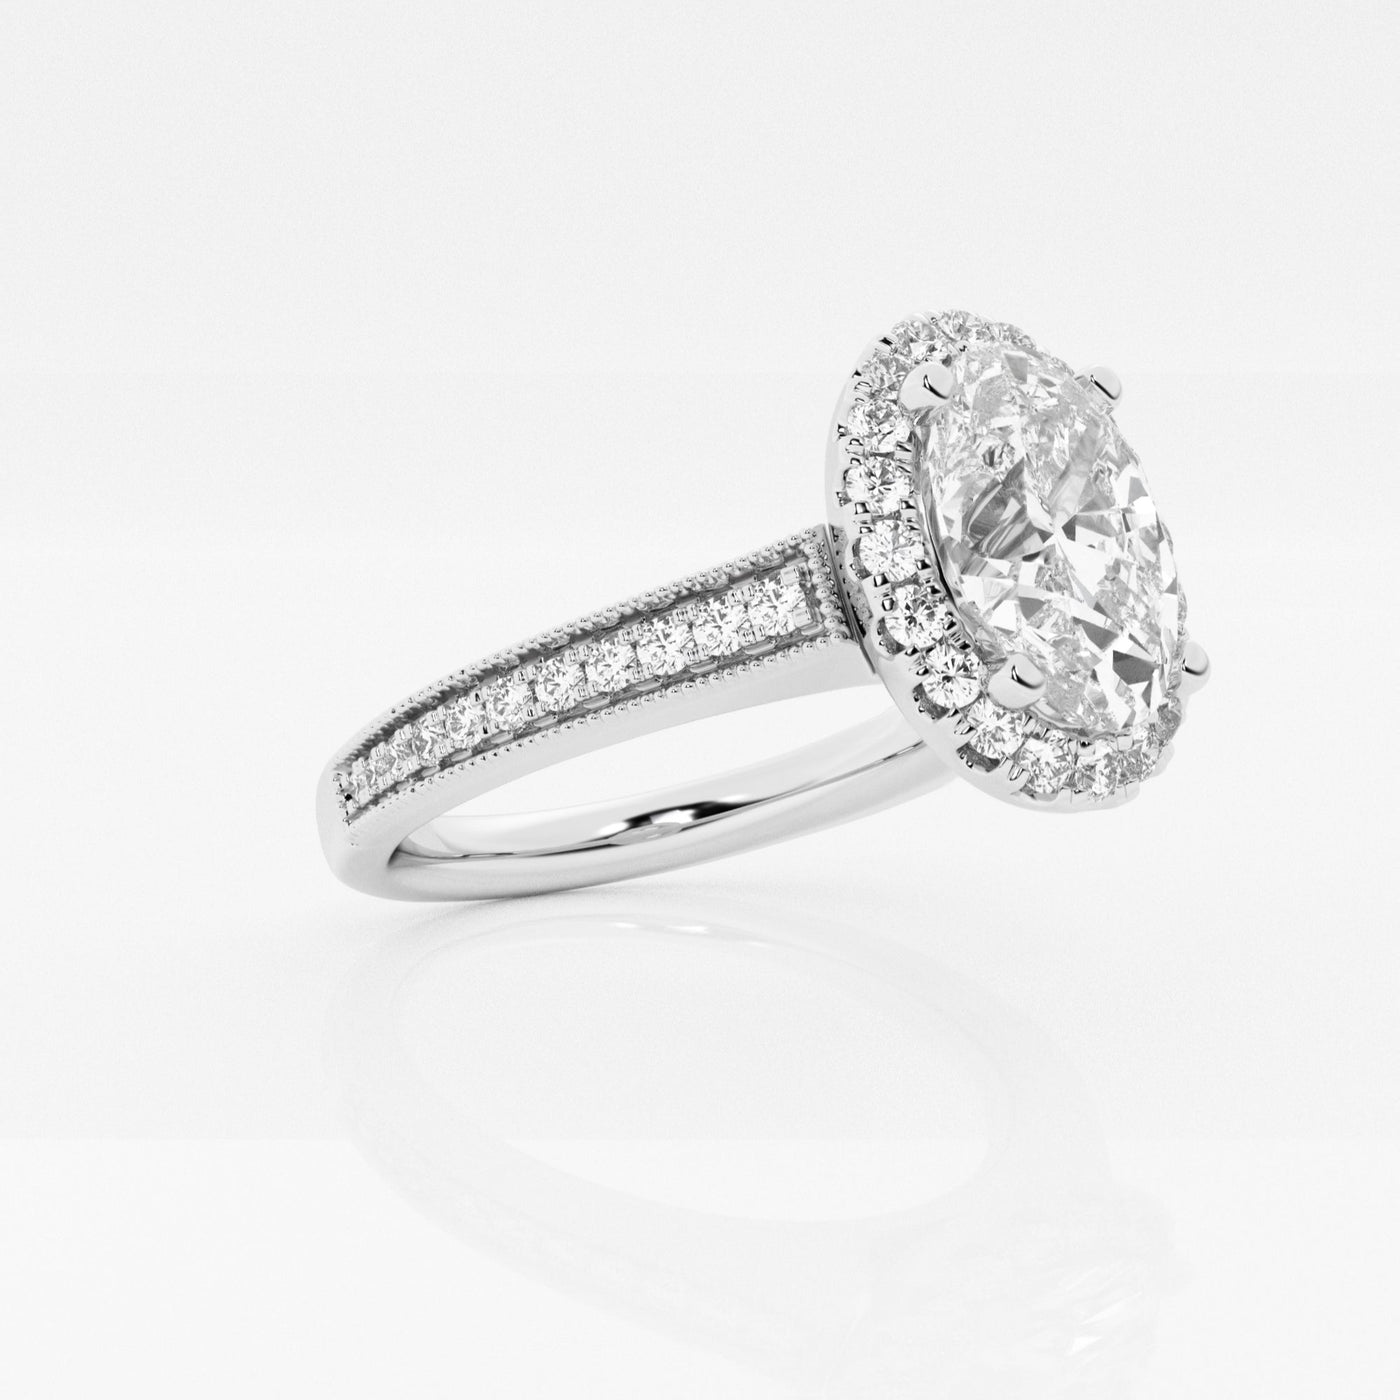 @SKU:LGR0637X4O200H1GW4~#carat_2.40#diamond-quality_fg,-vs2+#metal_18k-white-gold